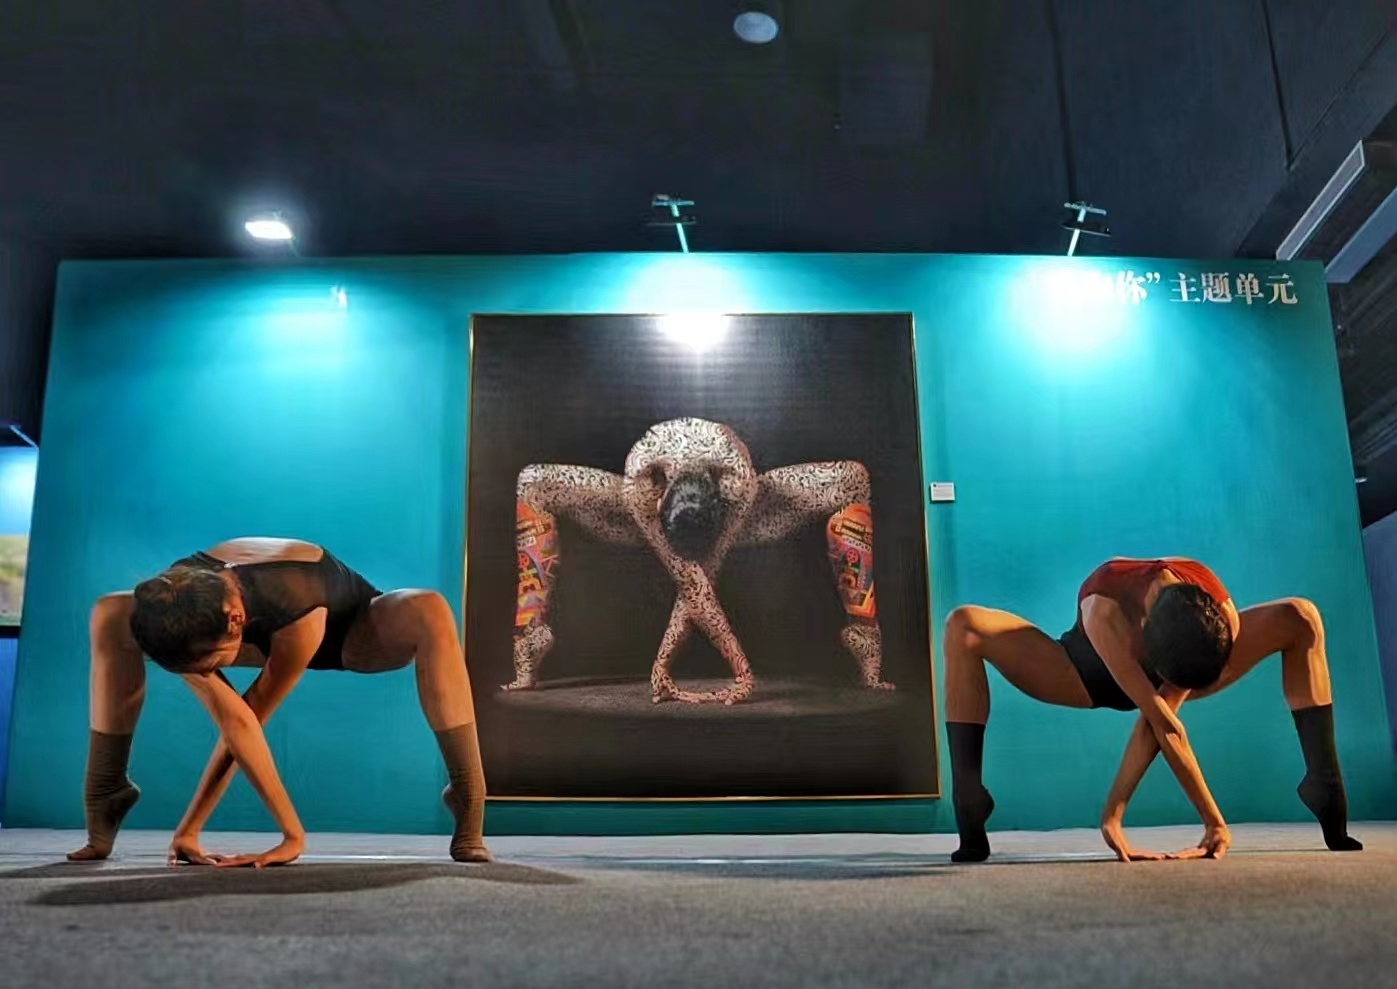 两位专业舞蹈演员在埃及摄影师艾曼·卢特菲·穆罕默德的作品《记载》前表演。陈文伟 摄.jpg